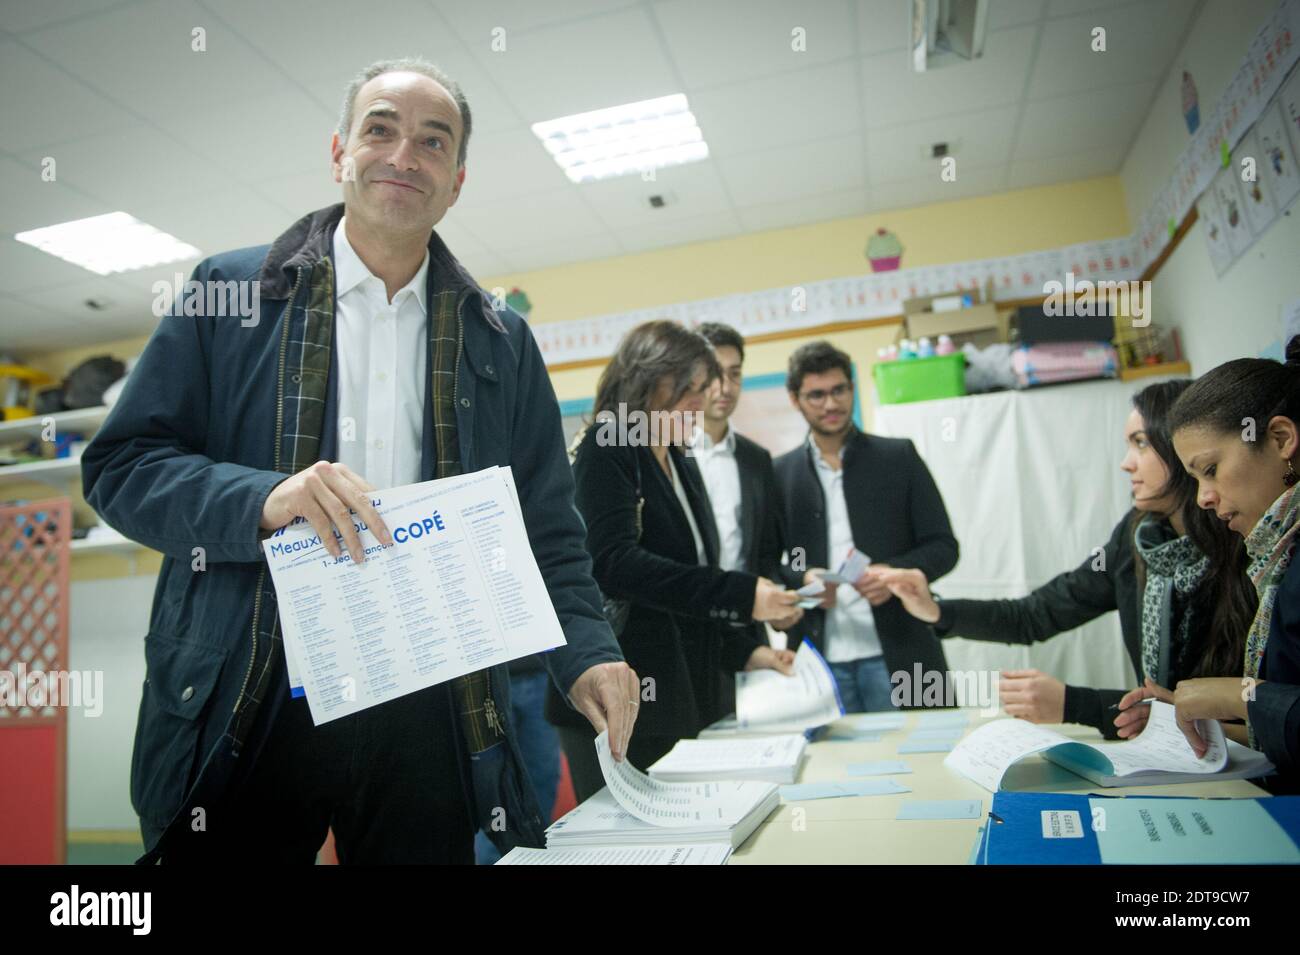 Président français de l'UMP, maire de Meaux et candidat aux élections  municipales de Meaux, Jean-François COPE et sa femme Nadia d'Alincourt  arrivent à un bureau de vote pour voter au premier tour